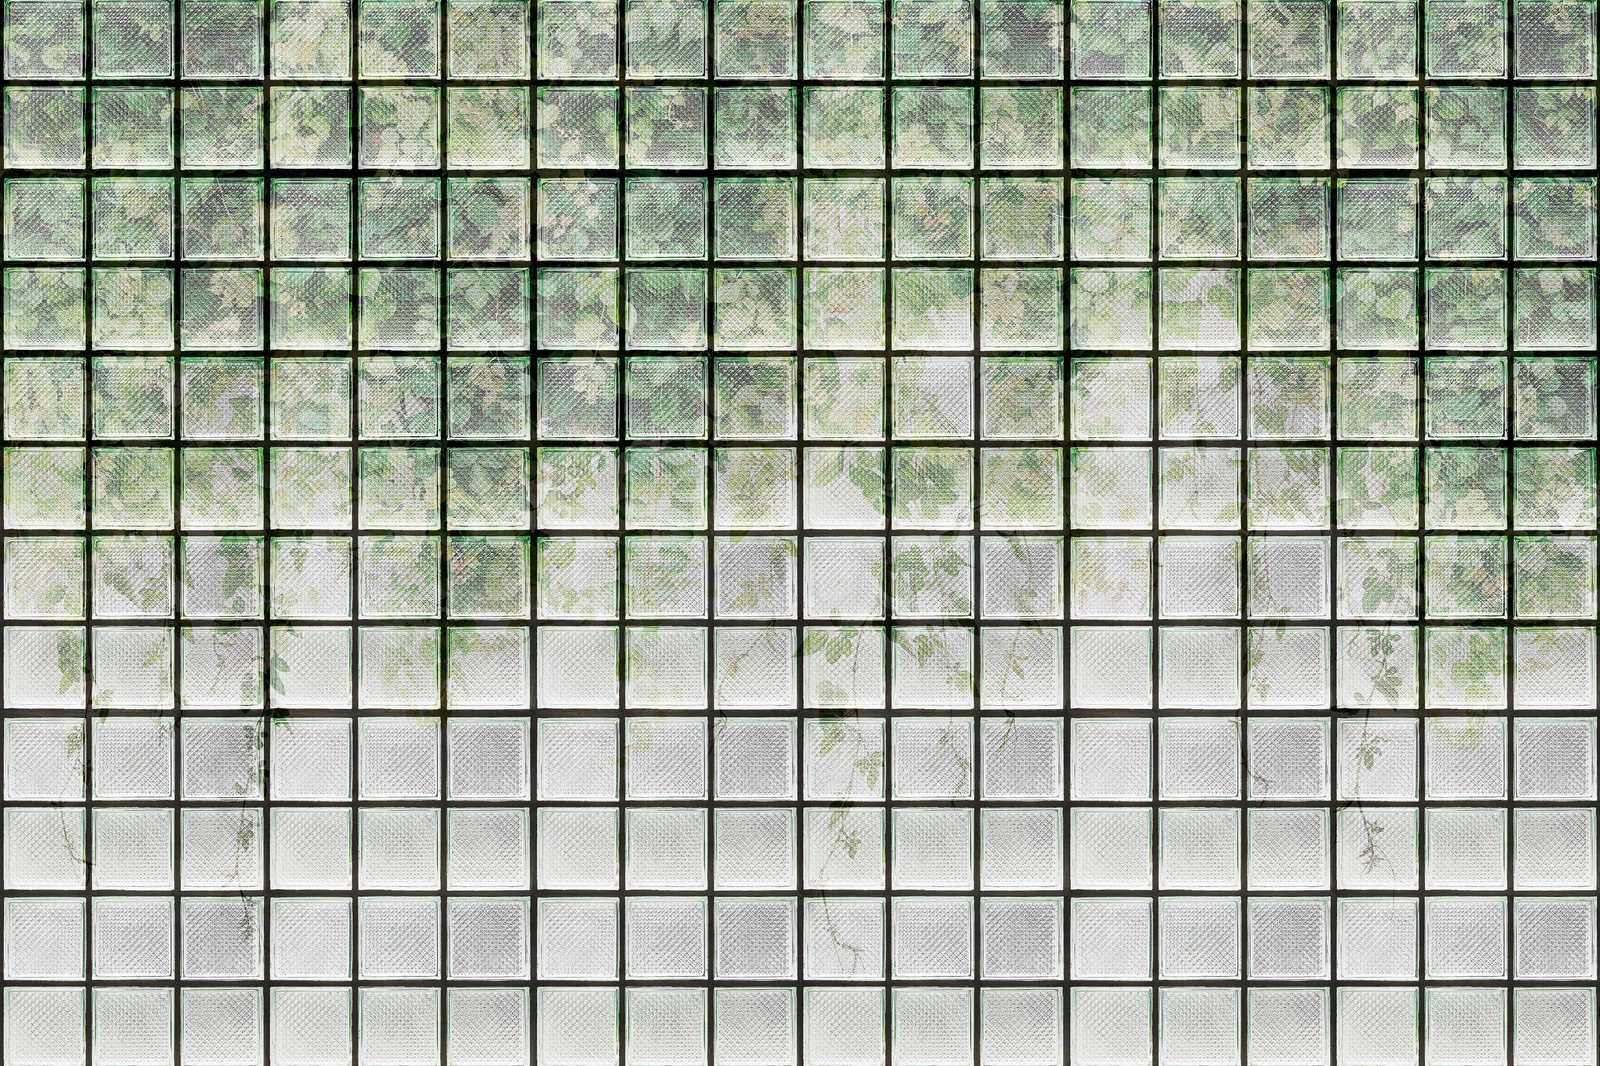             Green House 2 - Toile de serre Feuilles & briques de verre - 0,90 m x 0,60 m
        